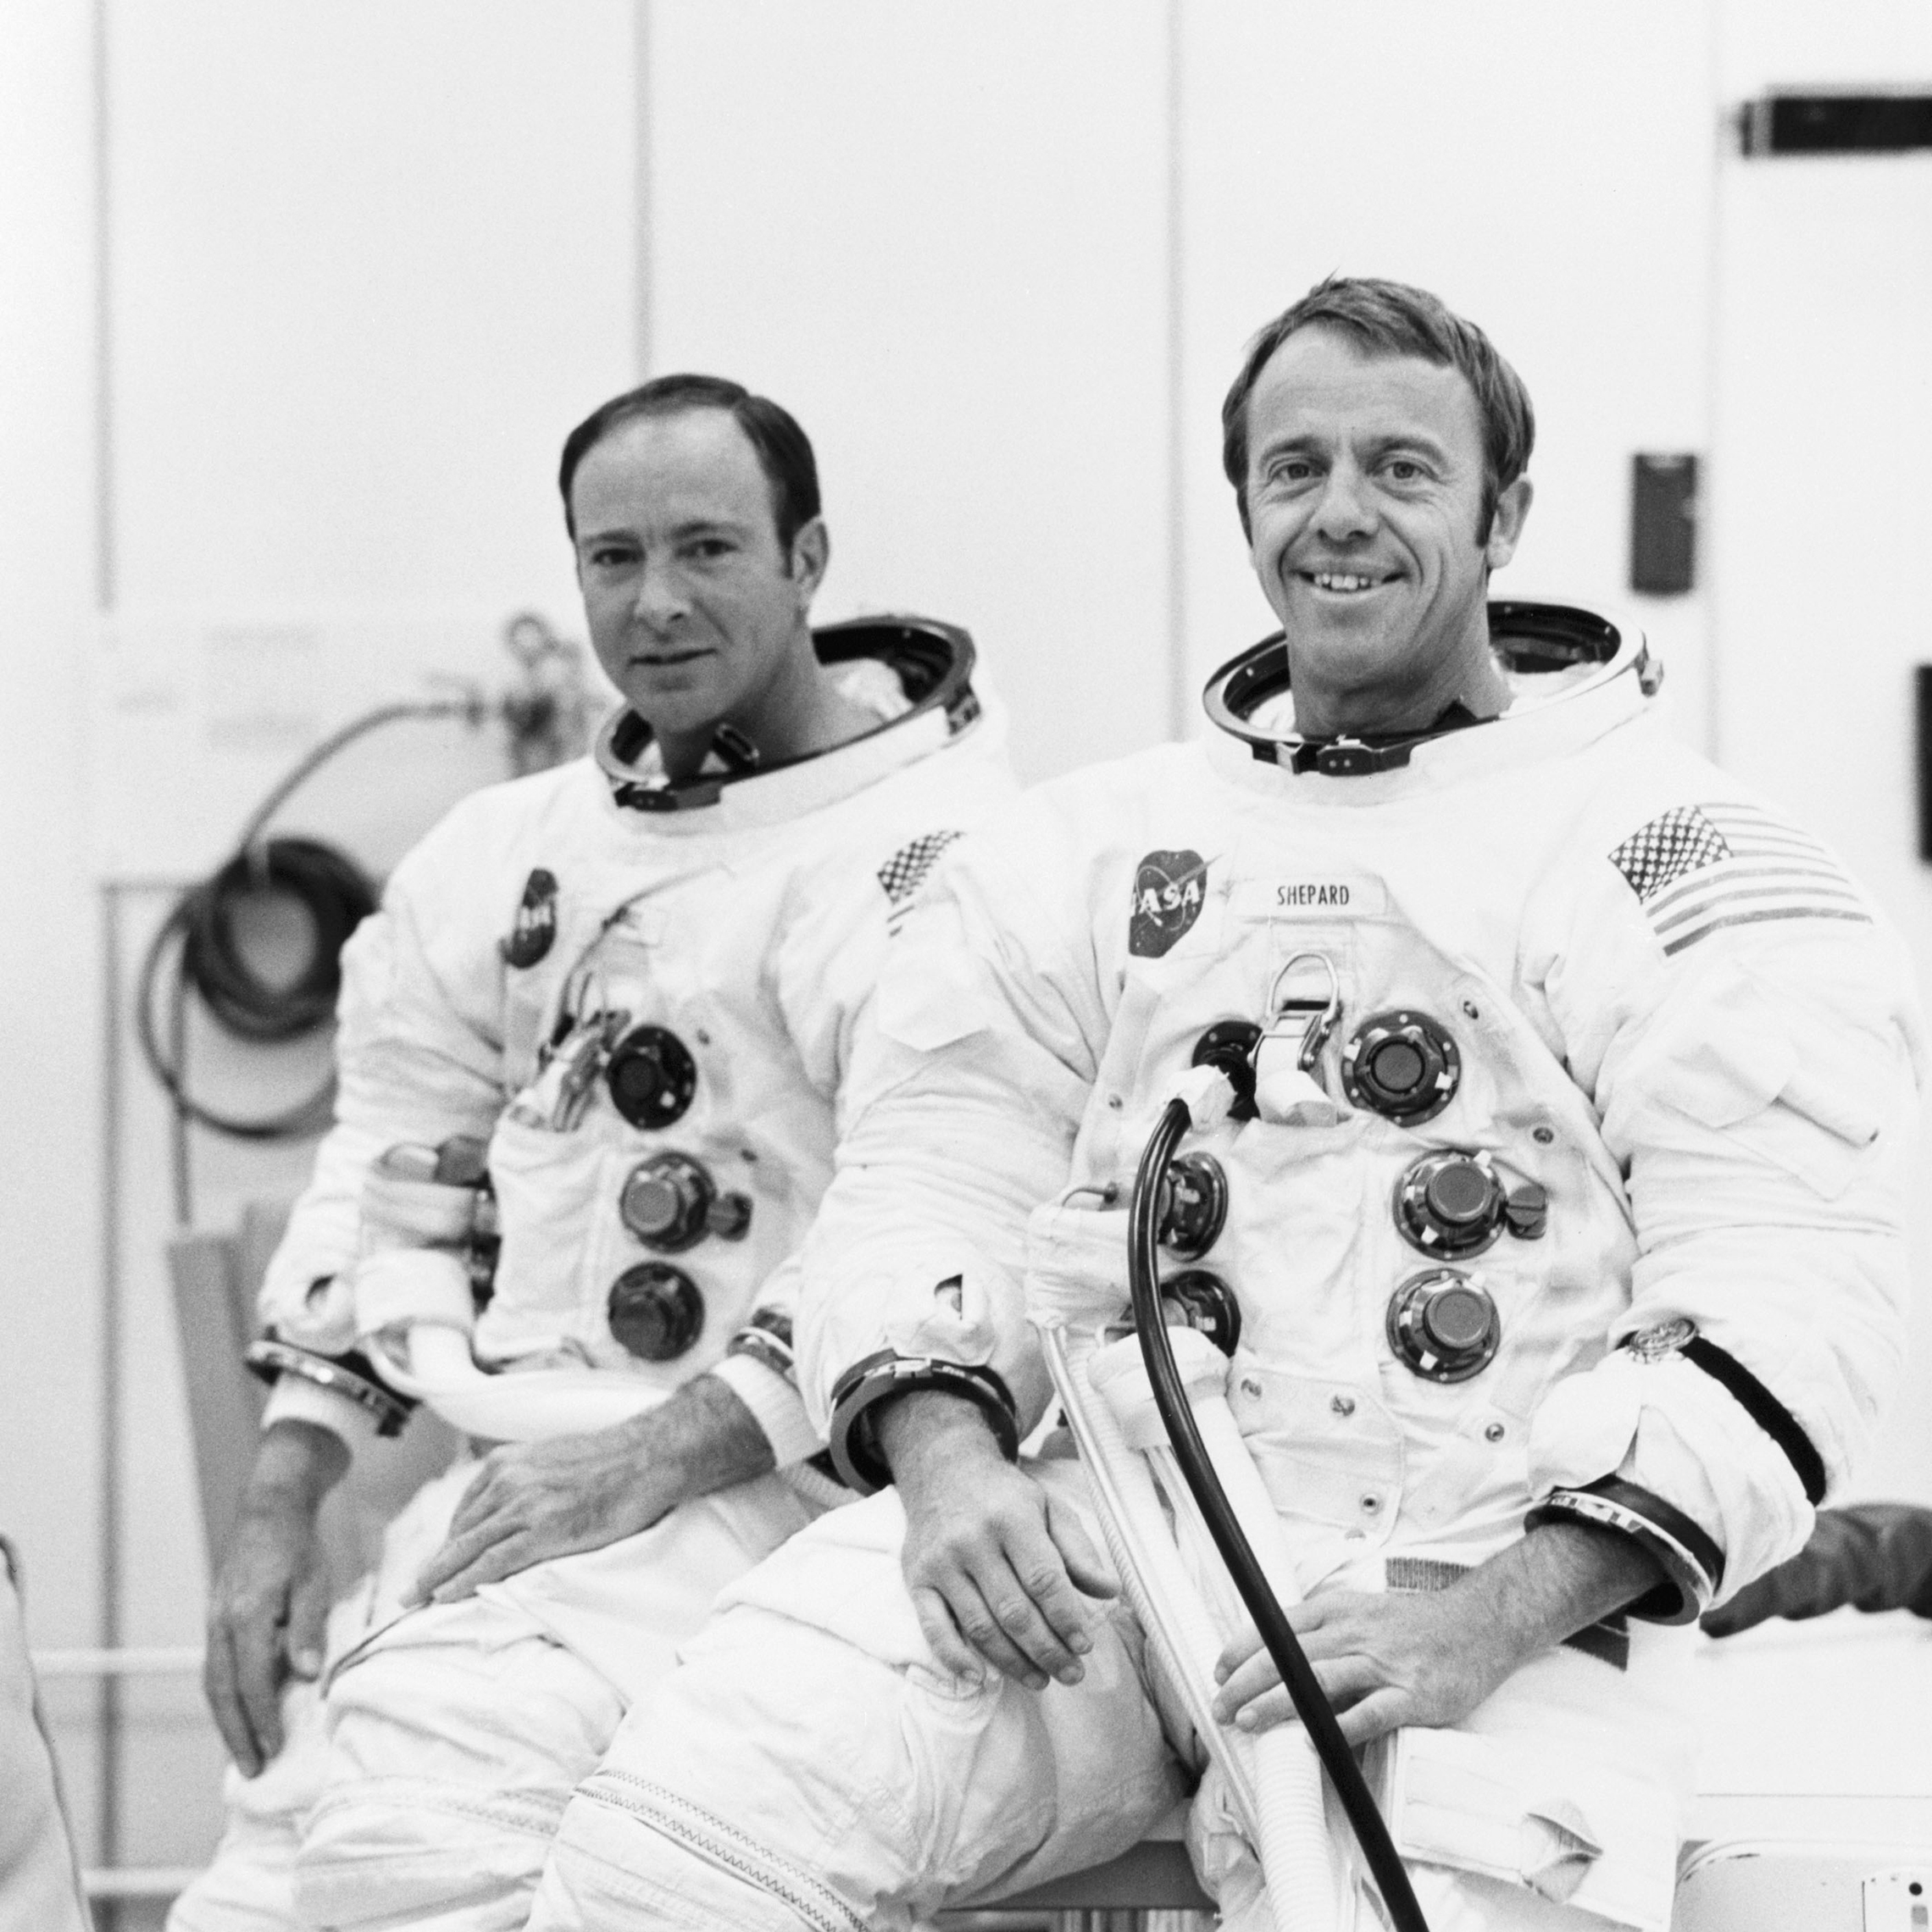 18 de setembro de 1970: os Astronautas Alan B. Shepard Jr. (direita), o comandante, e Edgar D. Mitchell, piloto do módulo lunar, são adequados para casas de altitude executar na Apollo 14, o módulo lunar (LM). A corrida tripulada em uma câmara de vácuo do edifício de operações da espaçonave tripulada foi conduzida para validar os sistemas de comunicação e orientação e navegação do LM. 18 de setembro de 1970: os astronautas Alan B. Shepard Jr., comandante, e Edgar D. Mitchell, piloto do módulo lunar, são adequados para uma corrida de altitude tripulada no módulo lunar Apollo 14 (LM). A corrida tripulada em uma câmara de vácuo do edifício de operações da espaçonave tripulada foi realizada para validar os sistemas de orientação e navegação do LM.'s communications and guidance and navigation systems. (NASA)